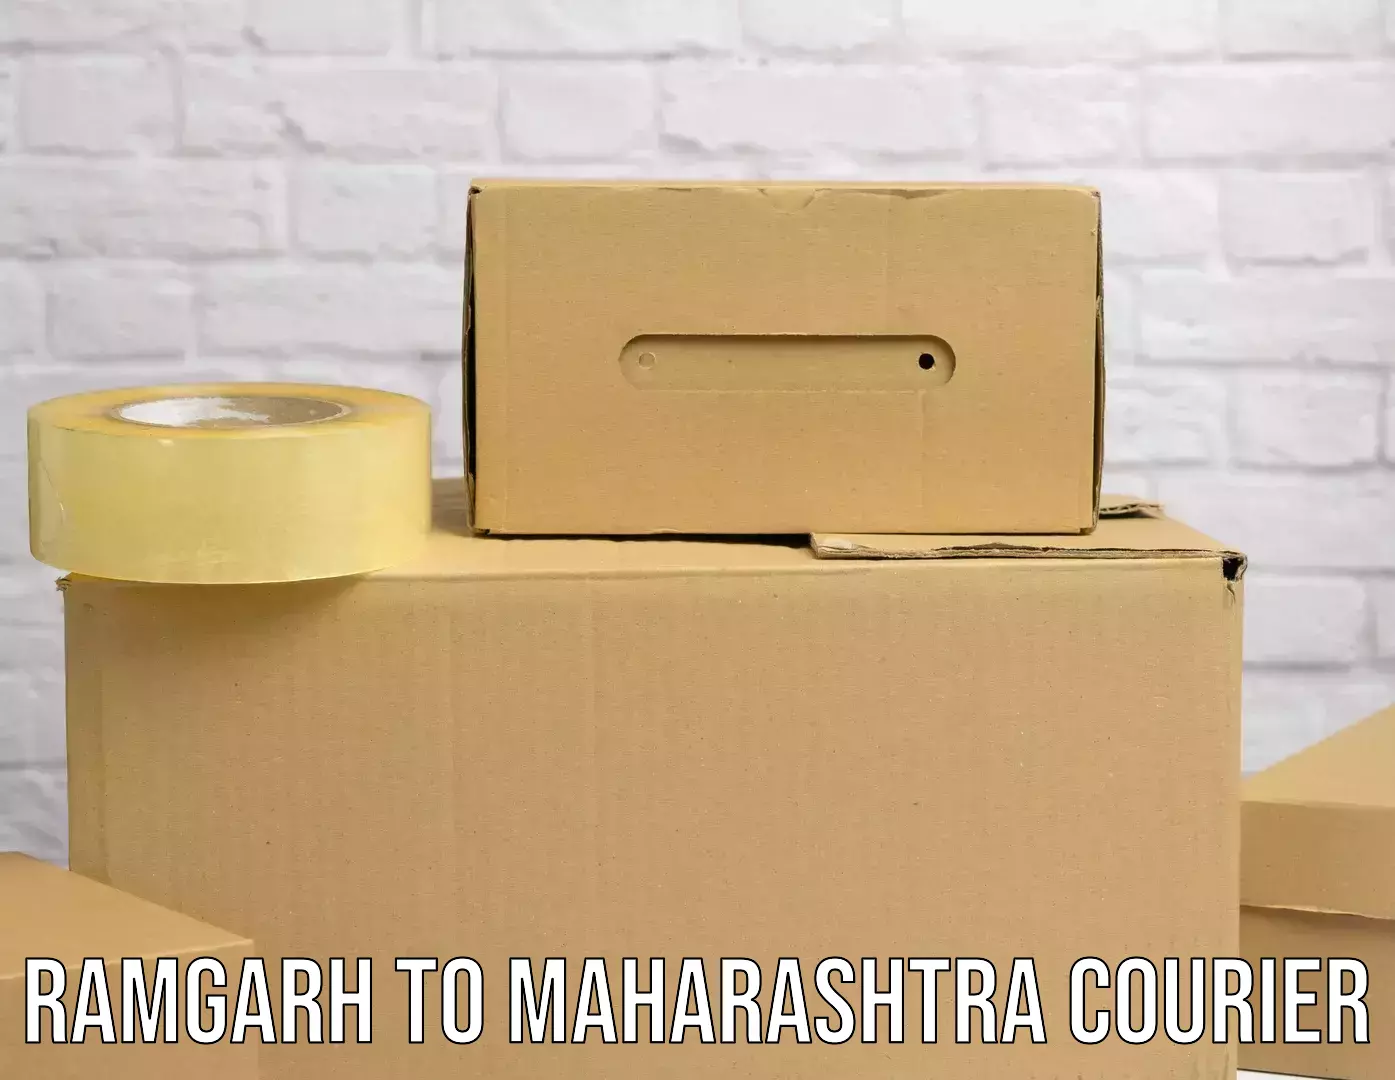 Holiday shipping services Ramgarh to Maharashtra